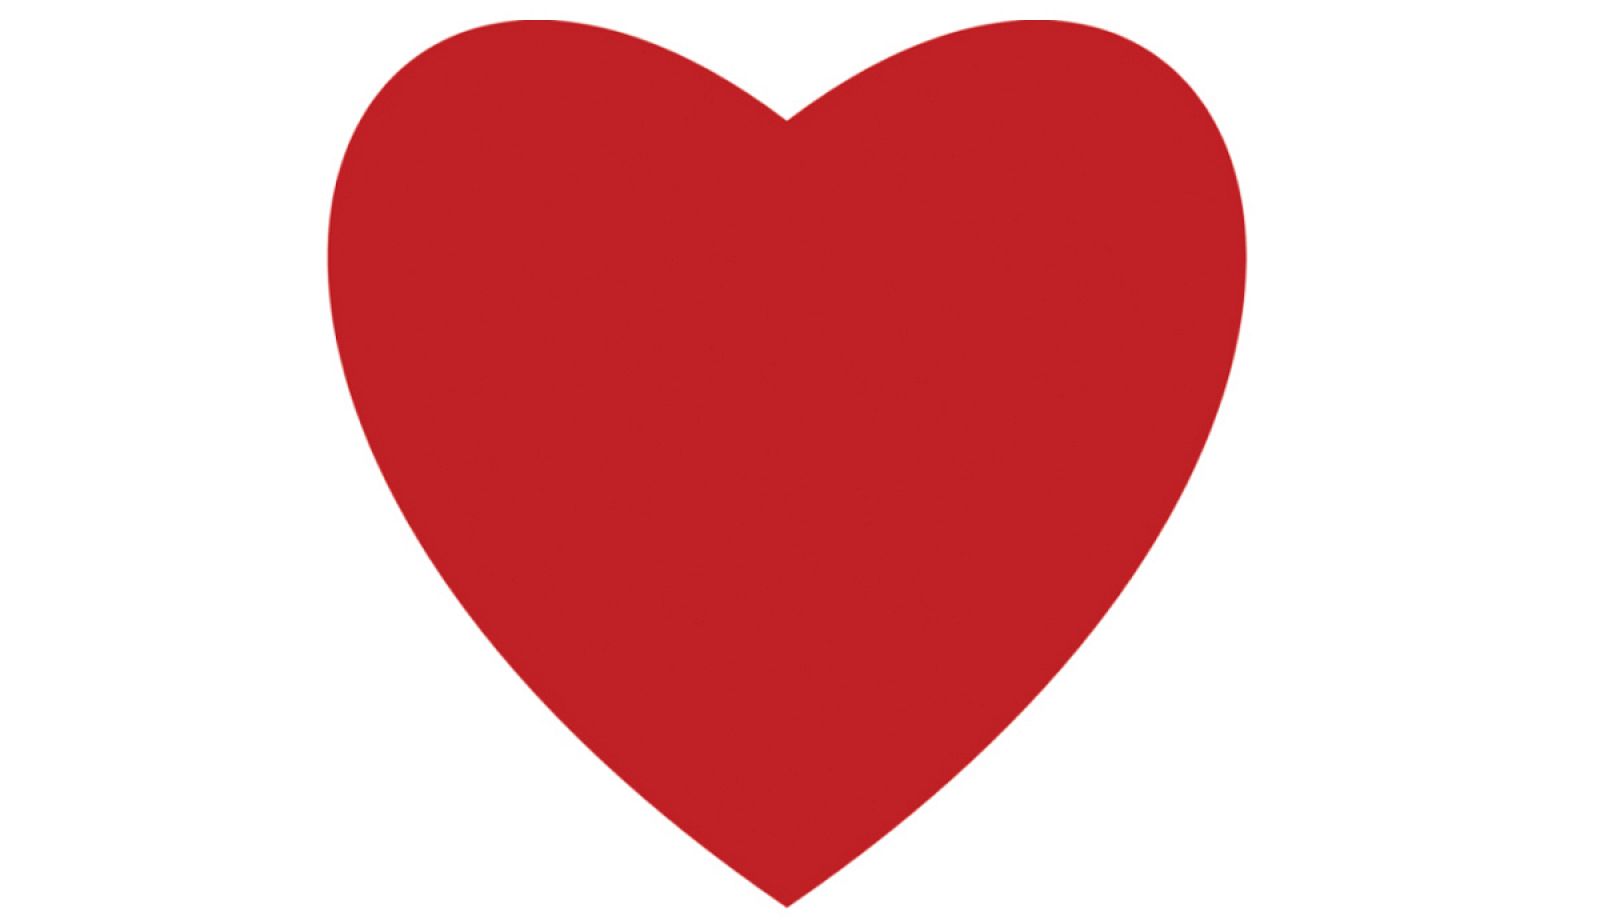 Un corazón es el símbolo que marca ahora los 'tuits' favoritos.